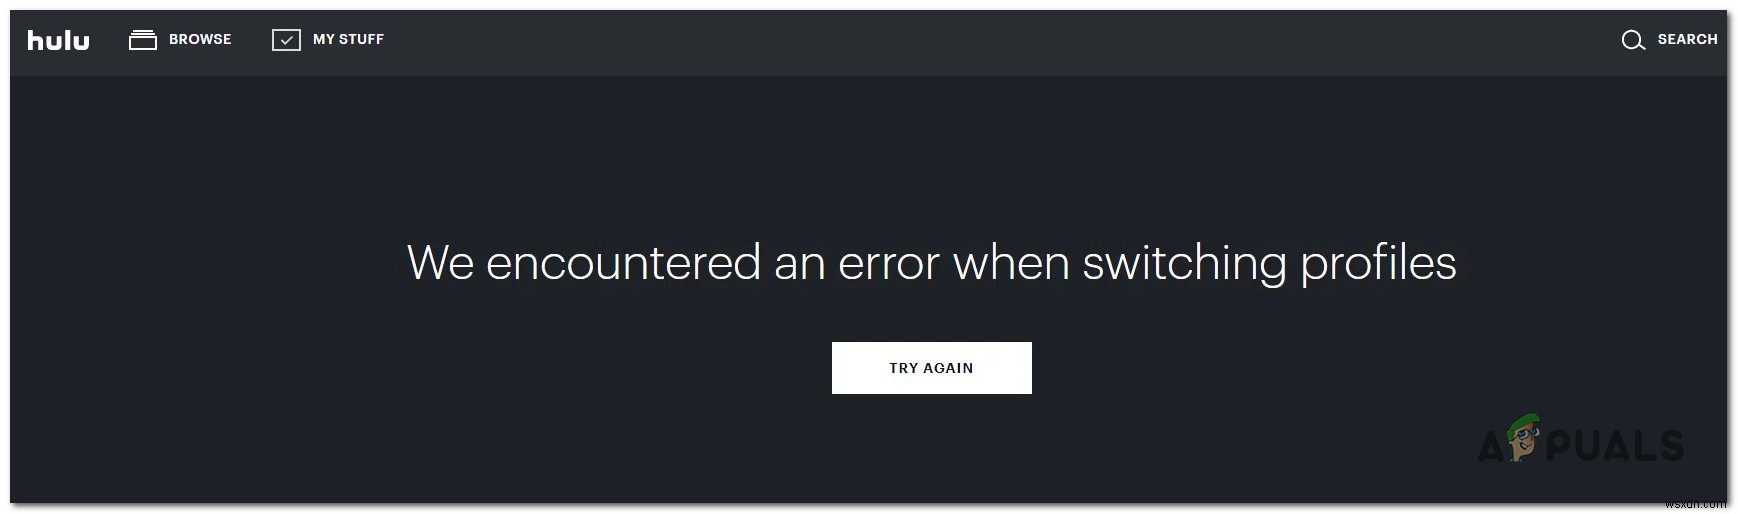 [แก้ไข] Hulu เราพบข้อผิดพลาดเมื่อเปลี่ยนโปรไฟล์